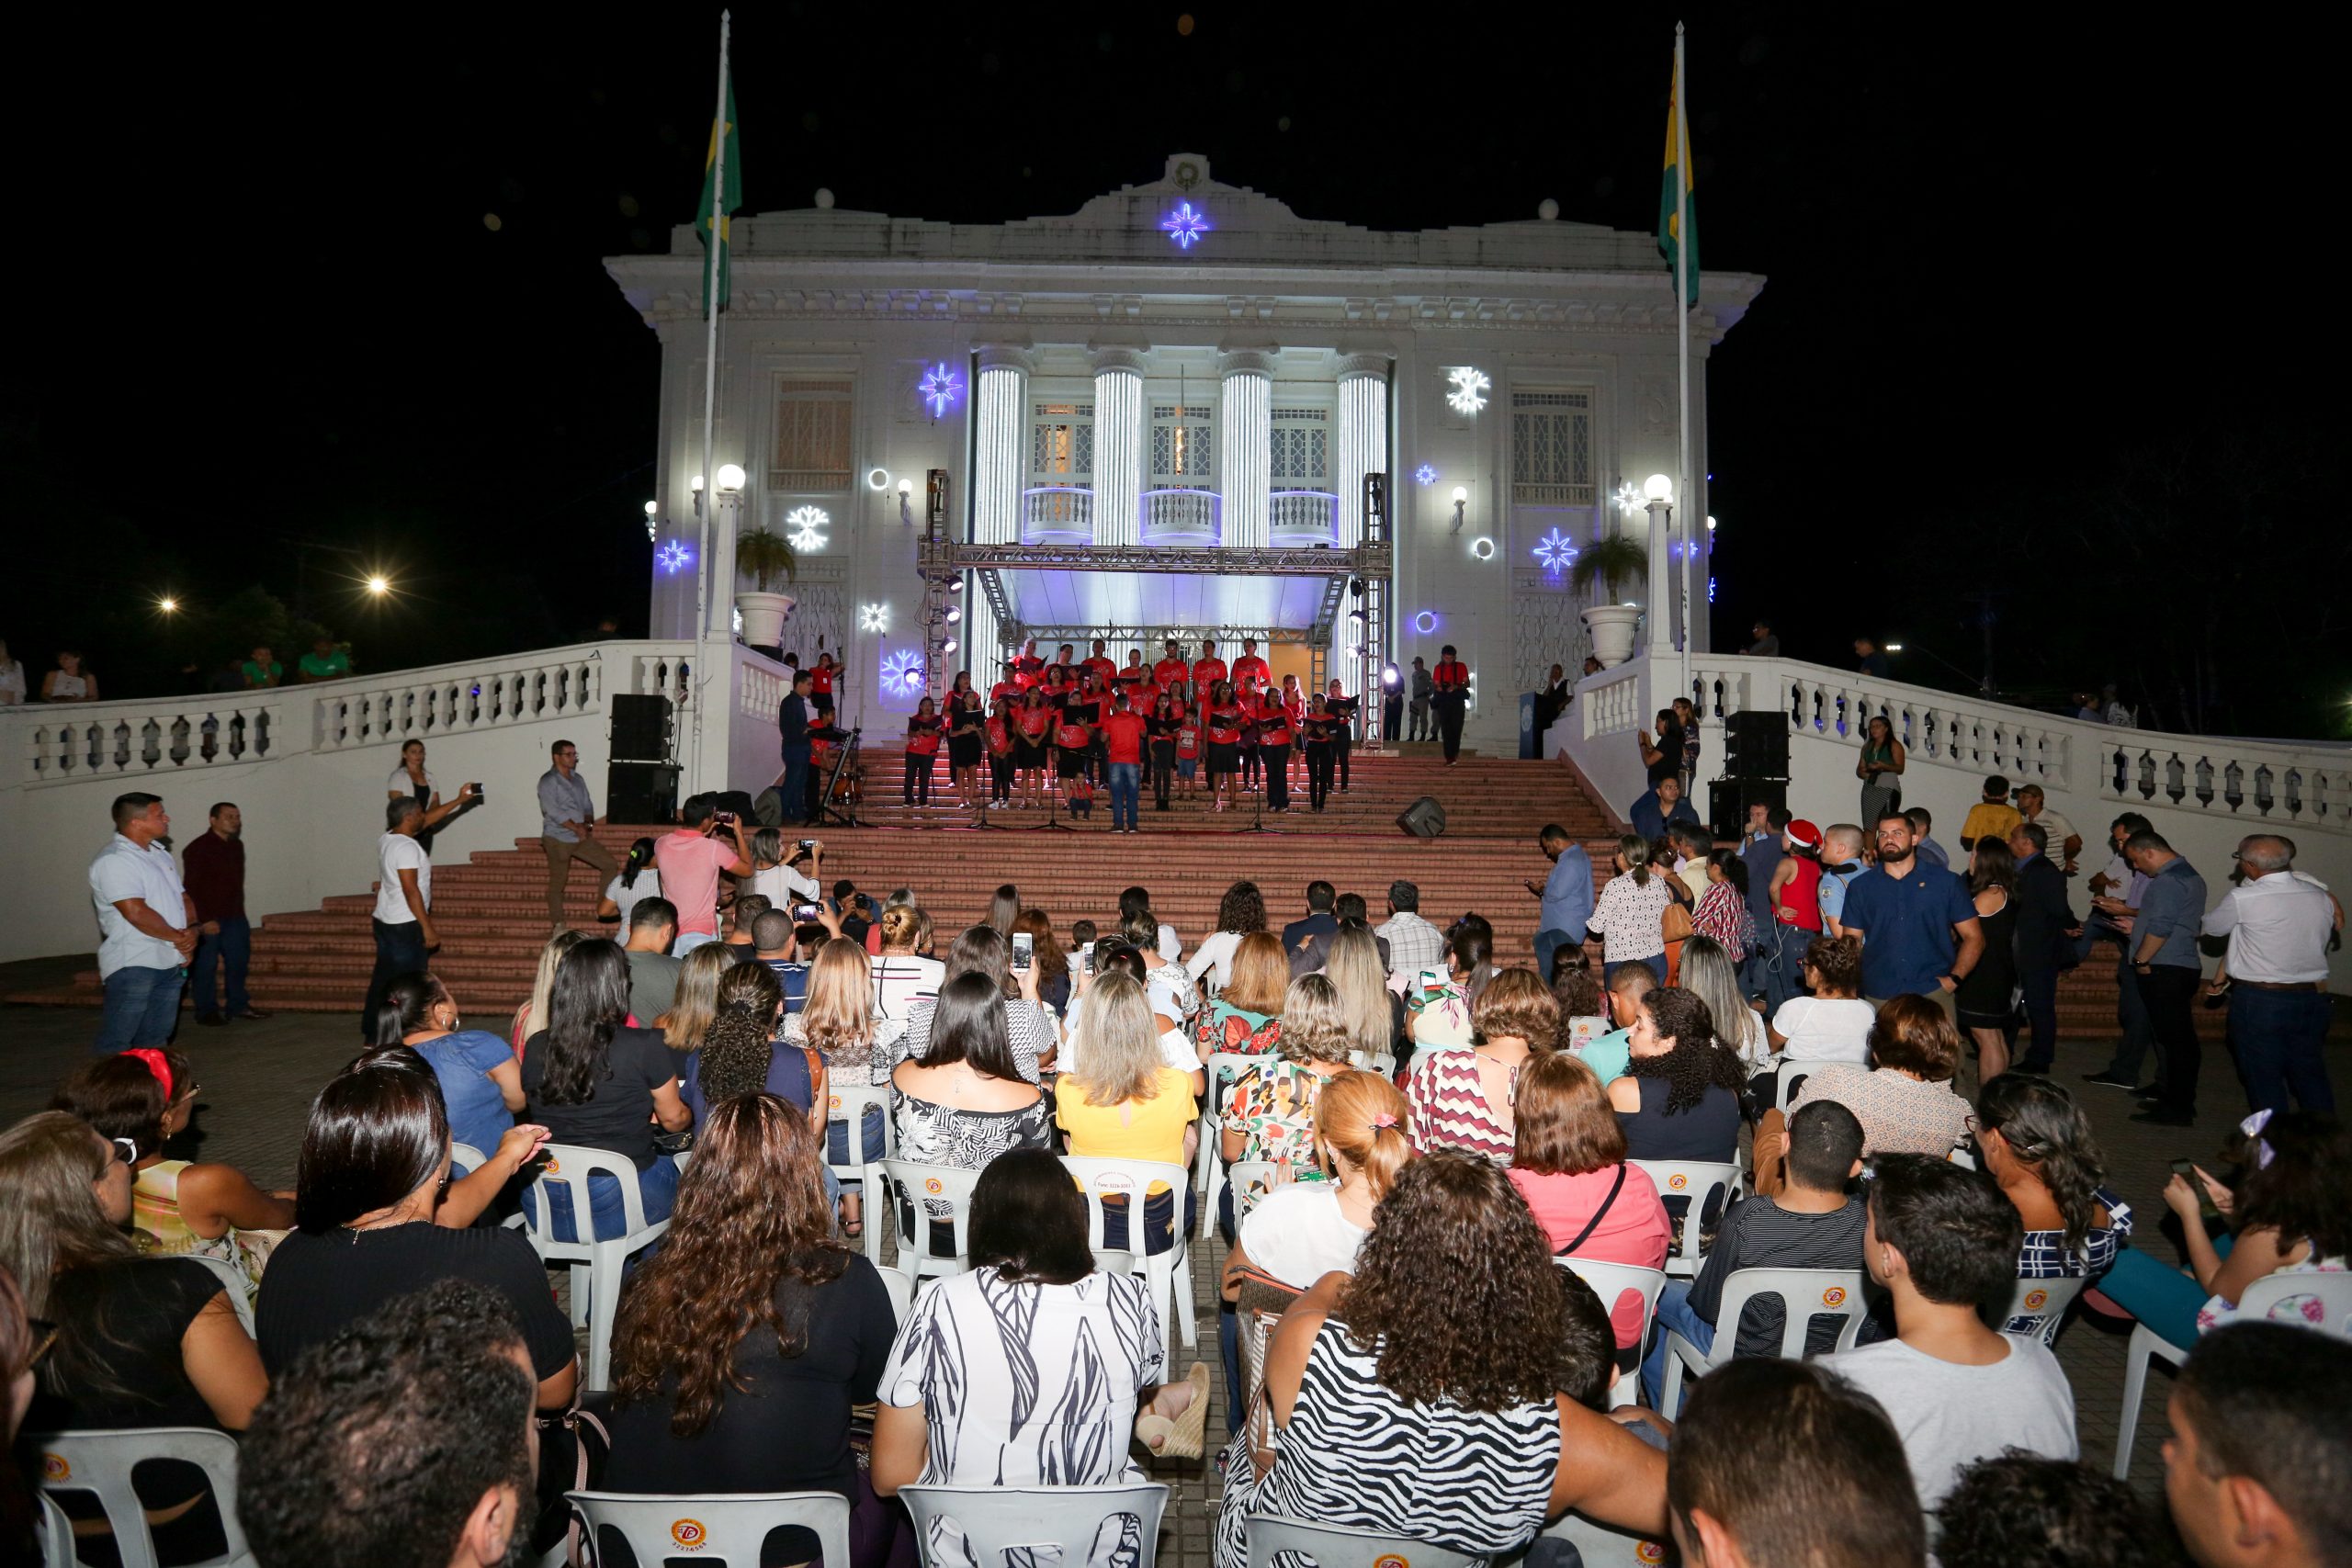 Coral da Escola de Música do Acre abre Cantata Natalina no Palácio